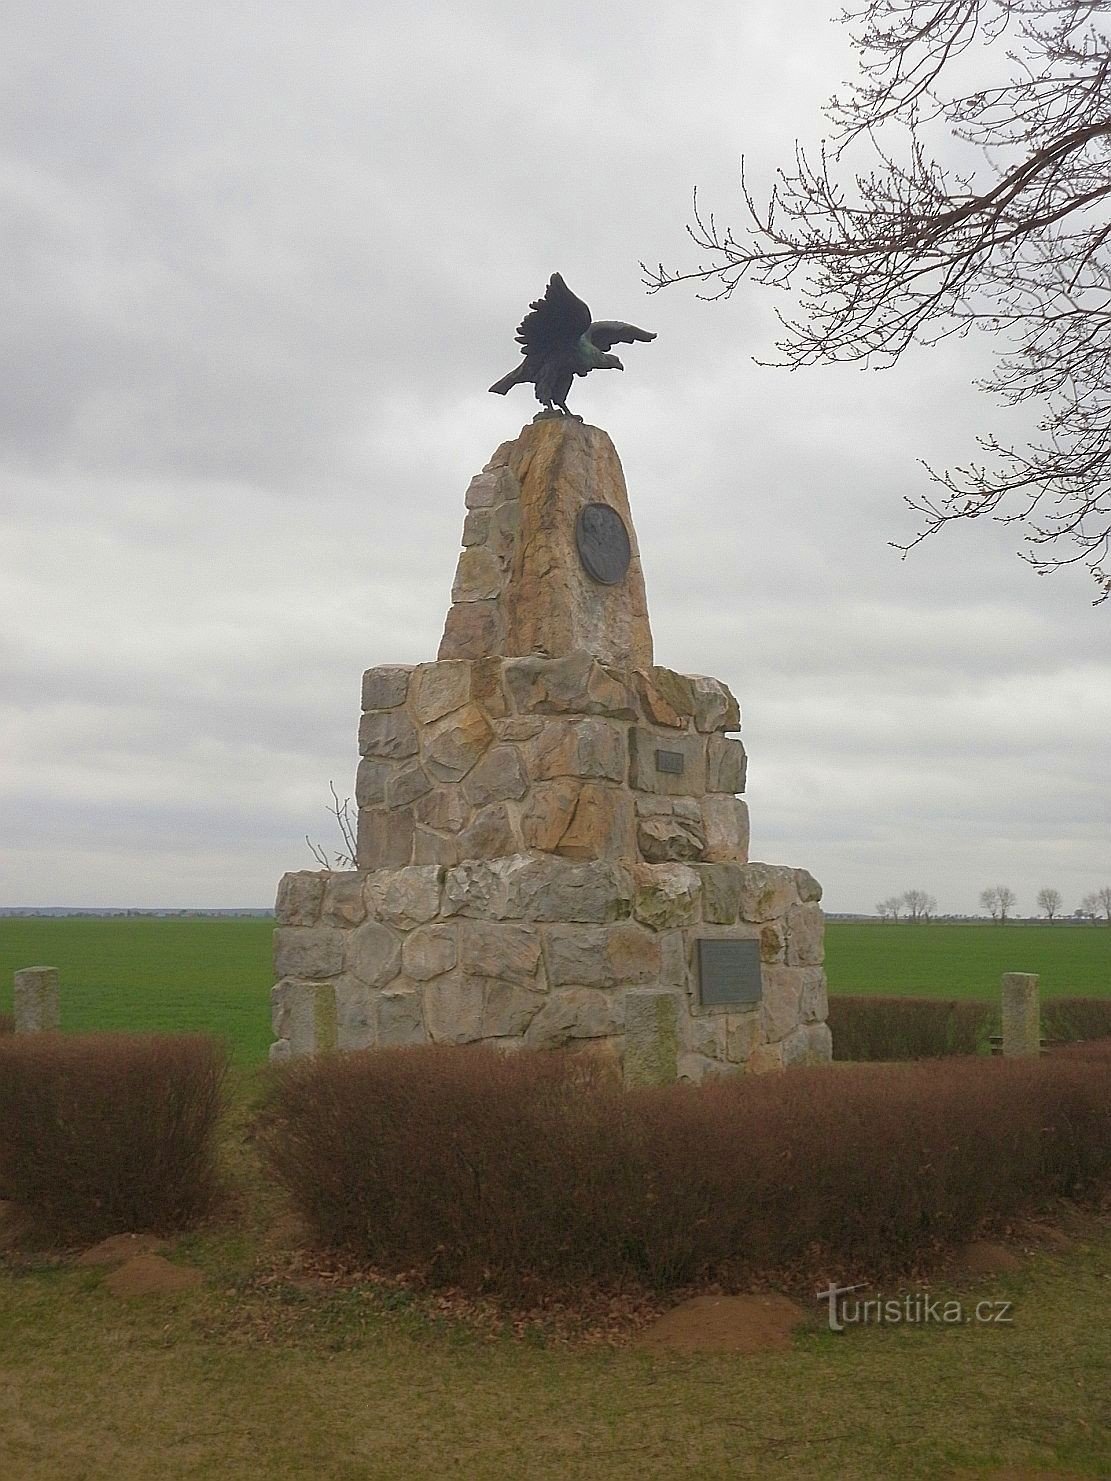 Monument du 100e anniversaire de la guerre de libération contre Napoléon